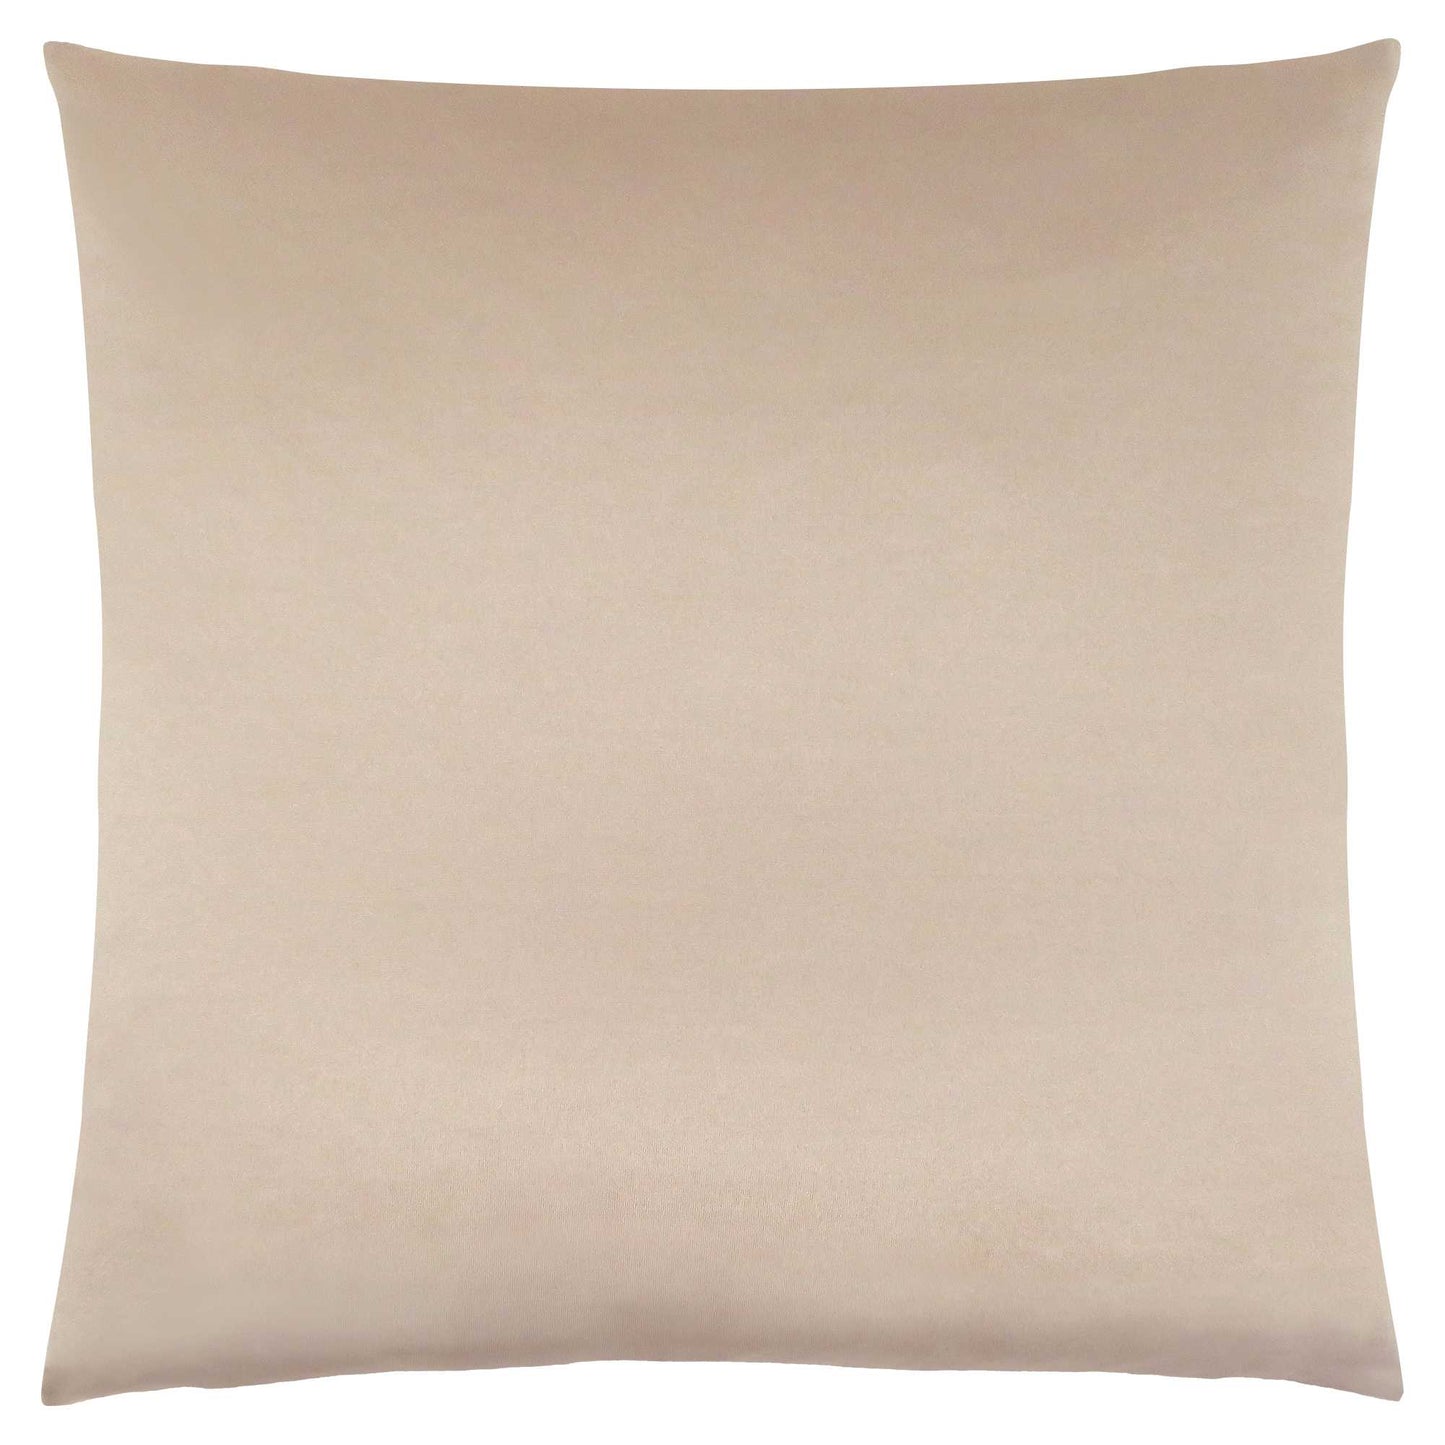 18" X 18" Gold Polyester Zippered Pillow